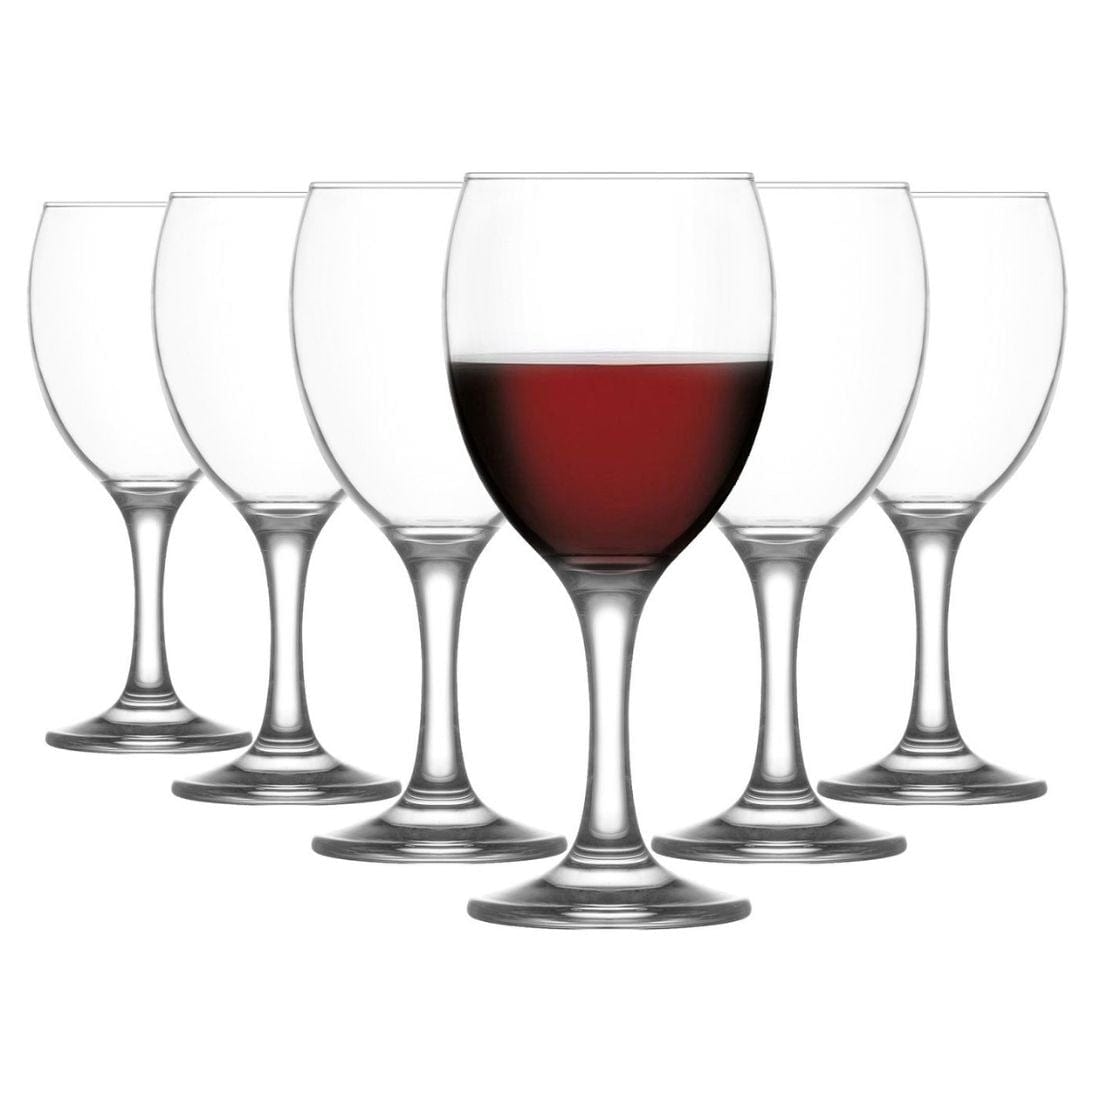 LAV Empire Red Wine Glasses (340 ml) - Set of 6